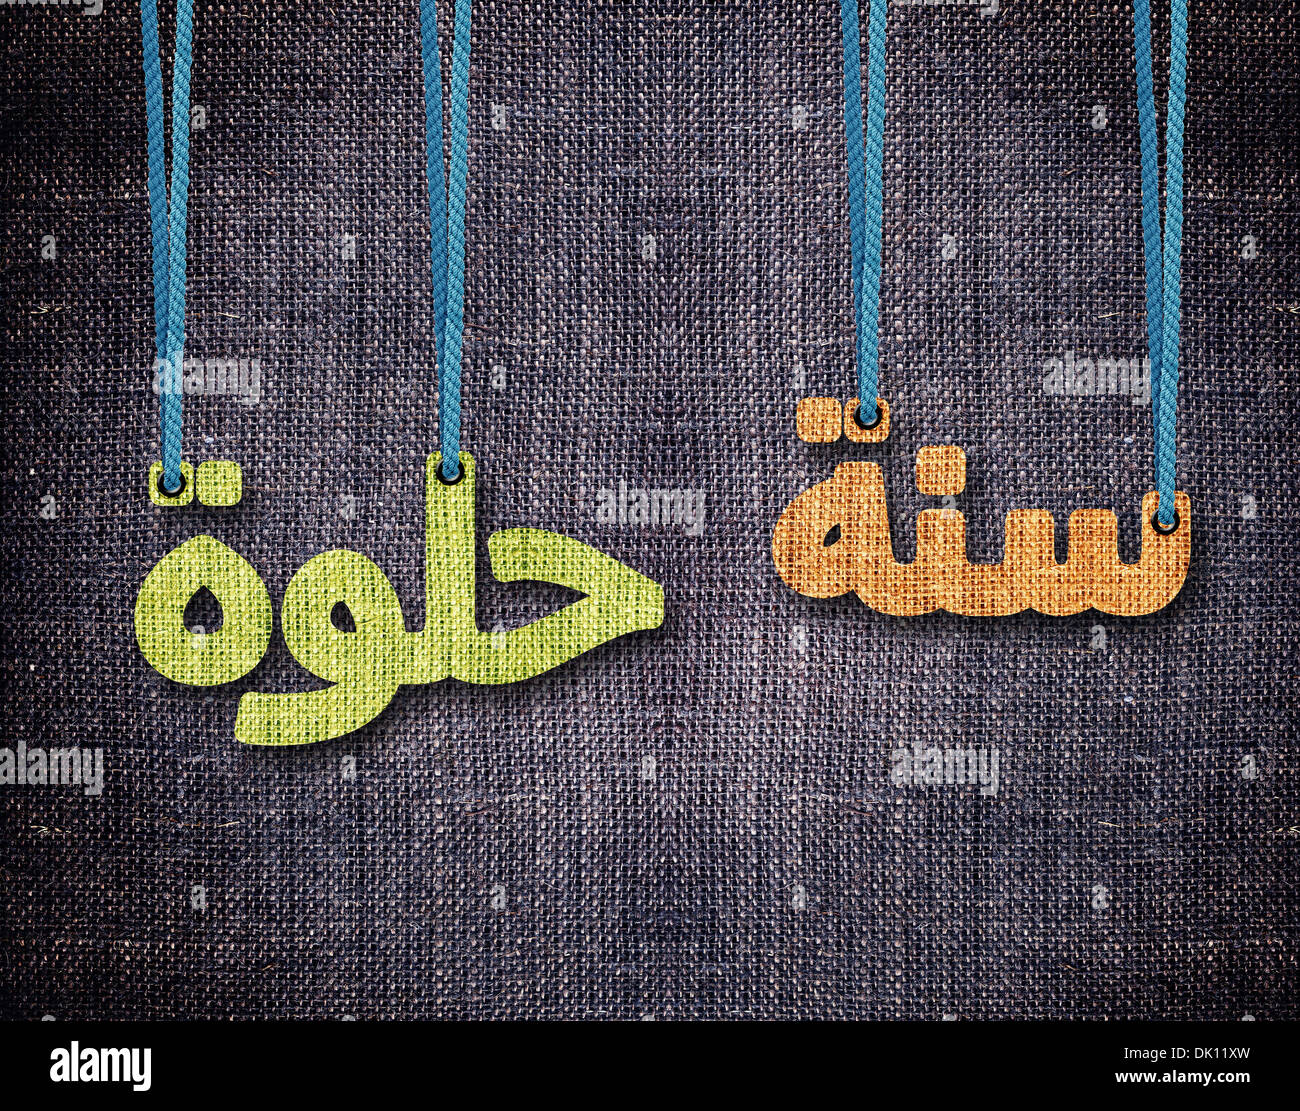 Vi auguriamo un bel nuovo anno in arabo languageconceptual immagine per il nuovo anno islamico (Hijri anno). Foto Stock